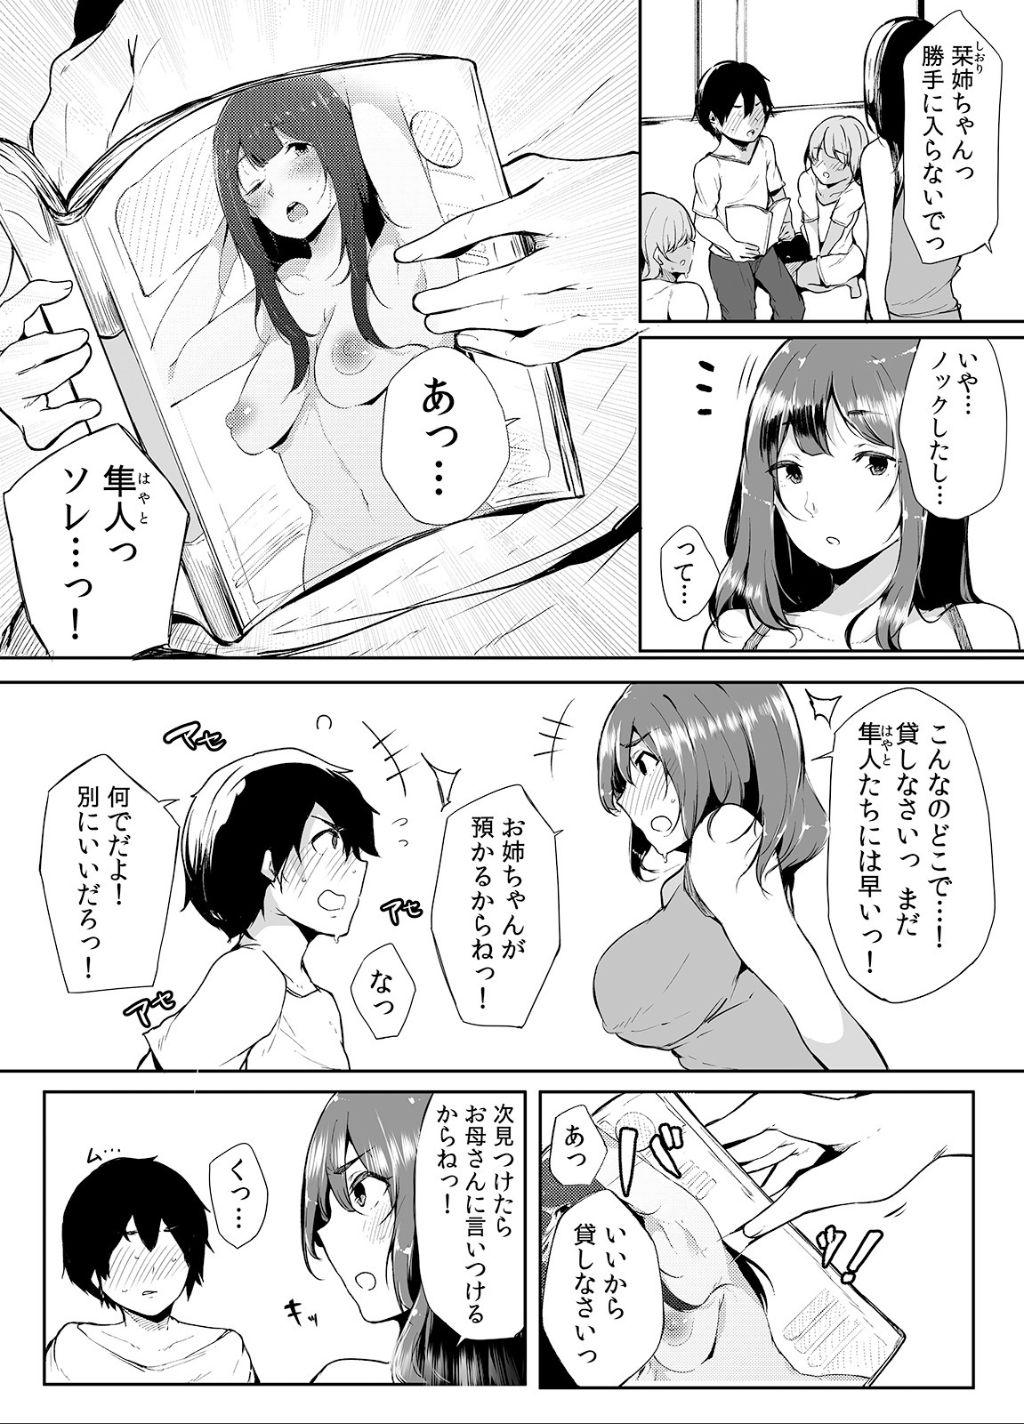 Curves Otouto ni Ero Manga to Onaji Koto o Sare Chau o Nee-chan no Hanashi 1 - Original Dirty - Page 5